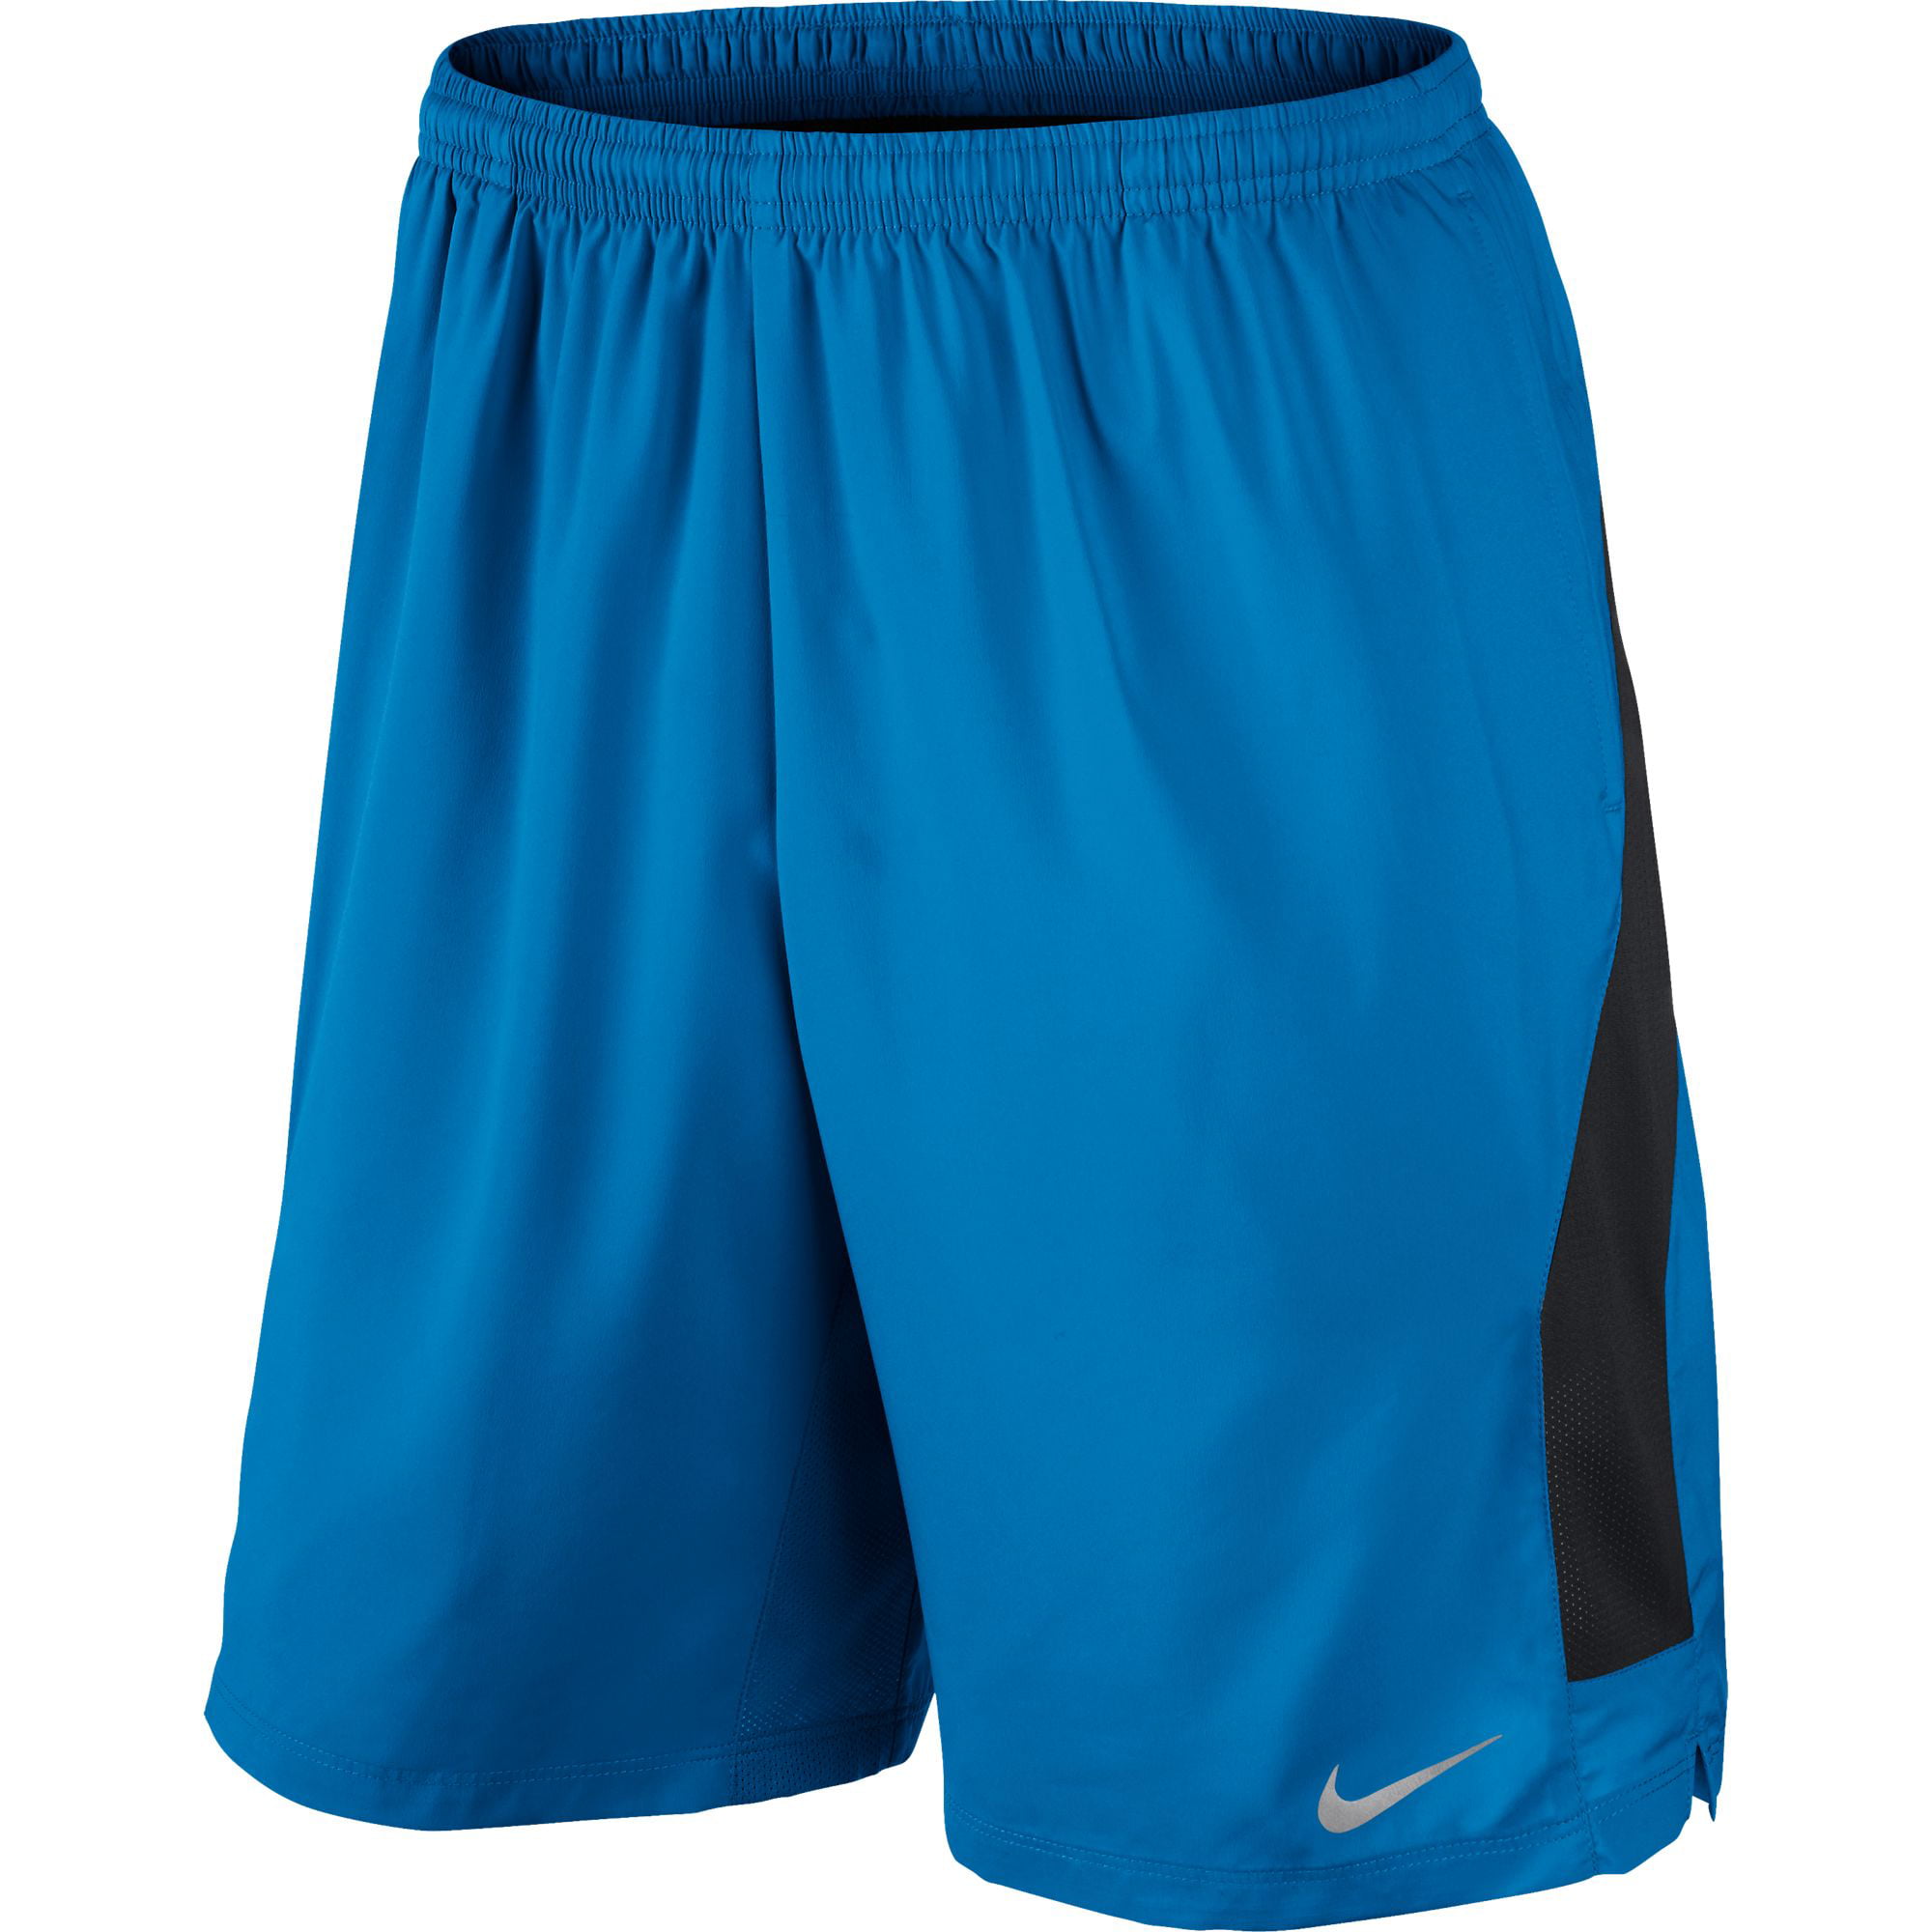 nike 9 inch running shorts